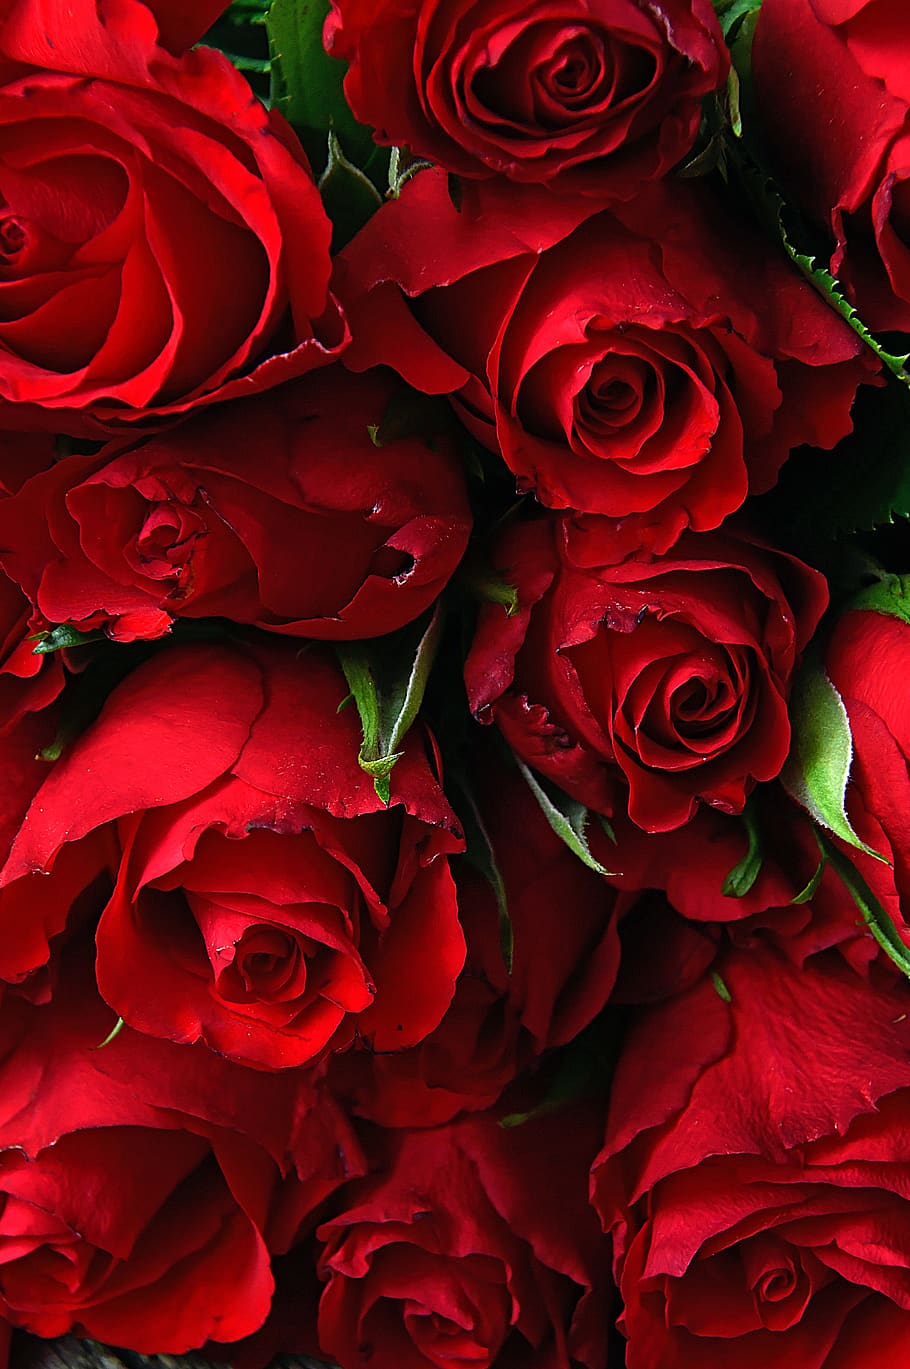 rosa, san valentín, día de san valentín, romántico, romance, amor, bonito, fondos de pantalla, flor, flores